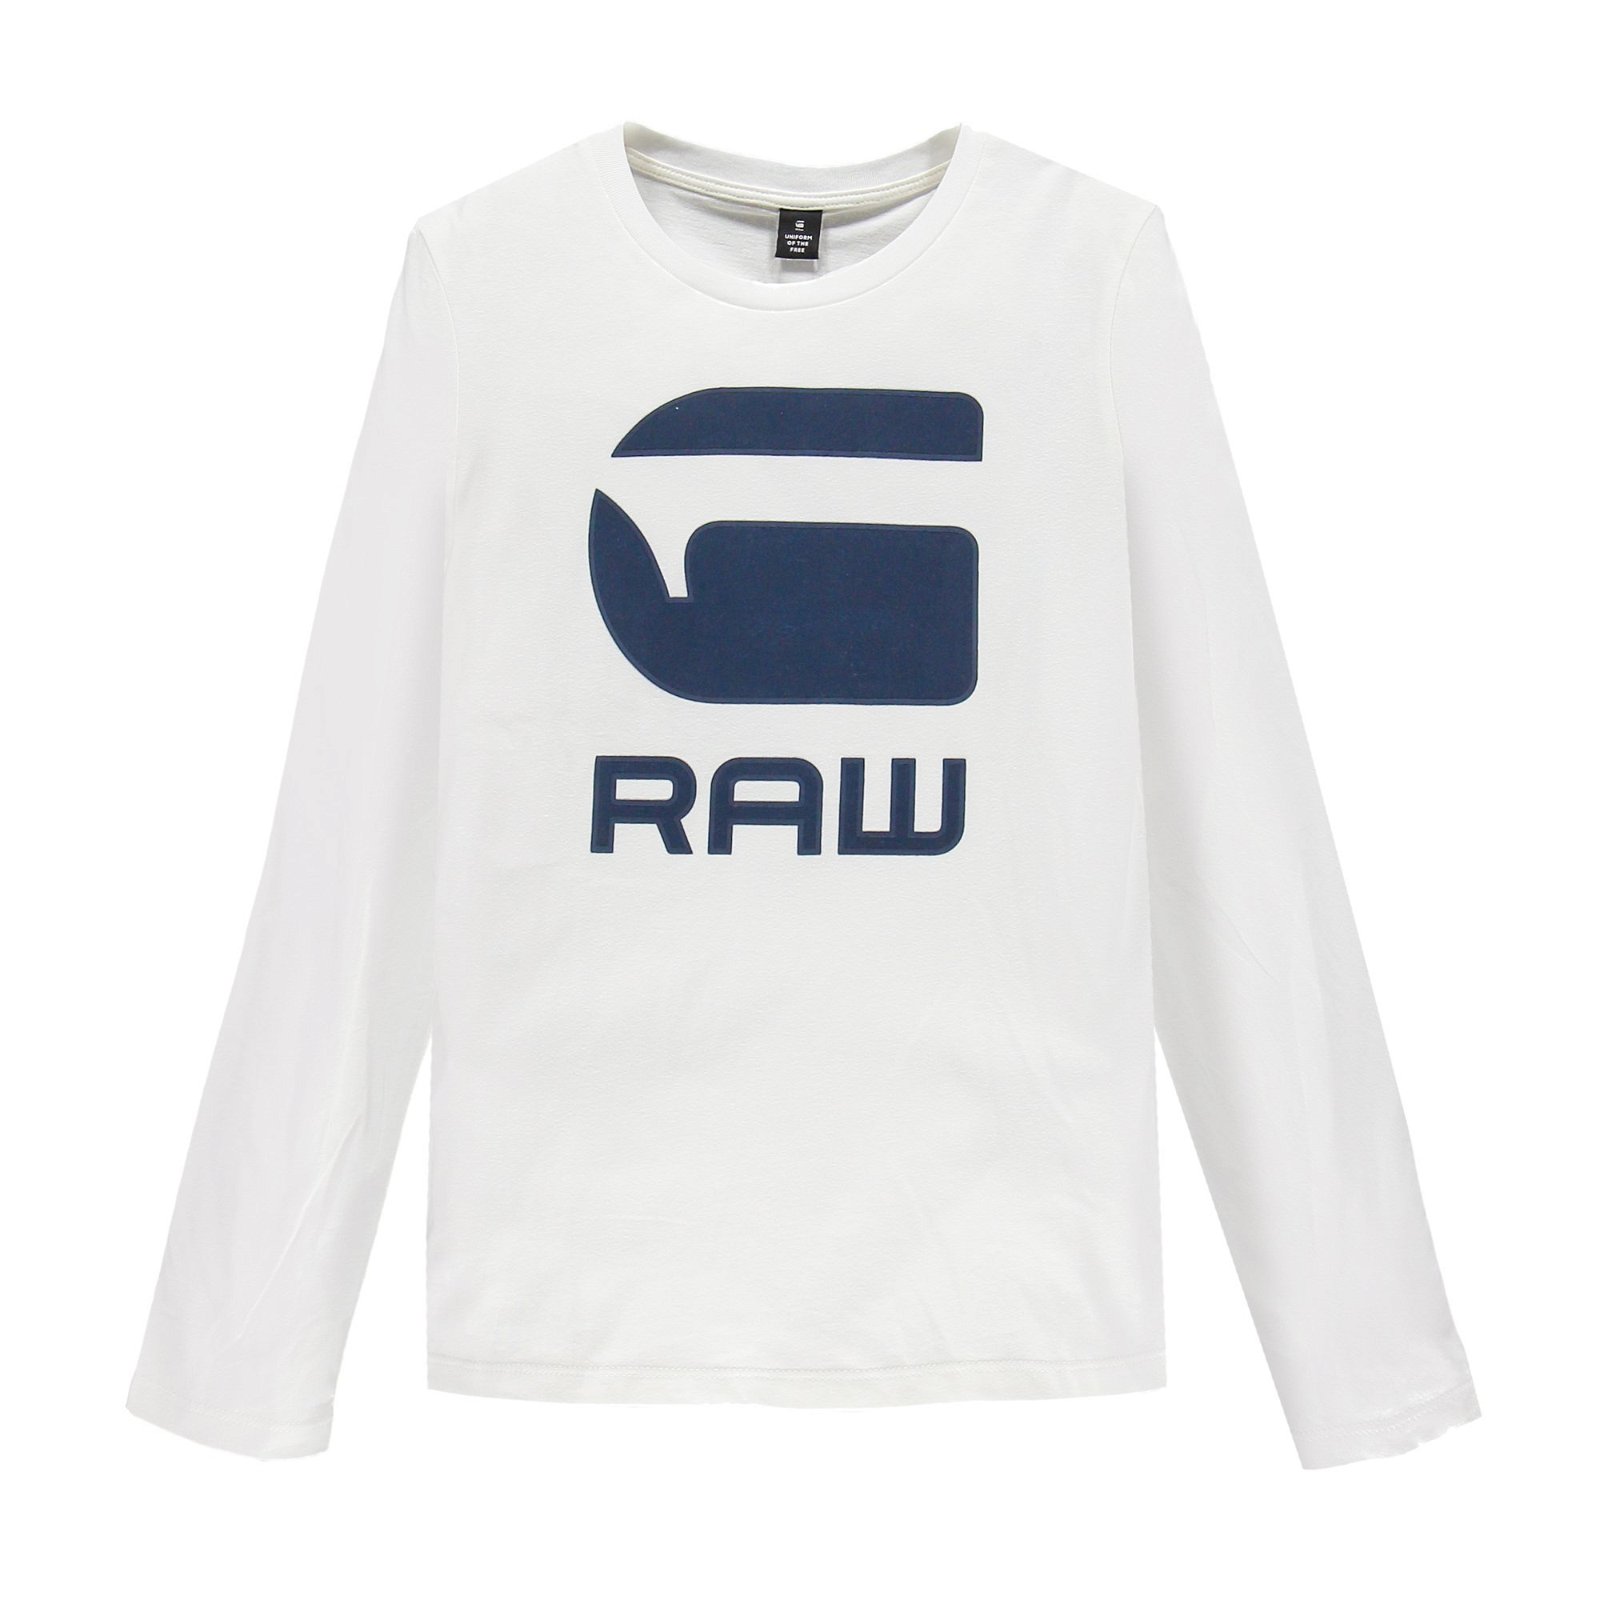 raw shirt brand